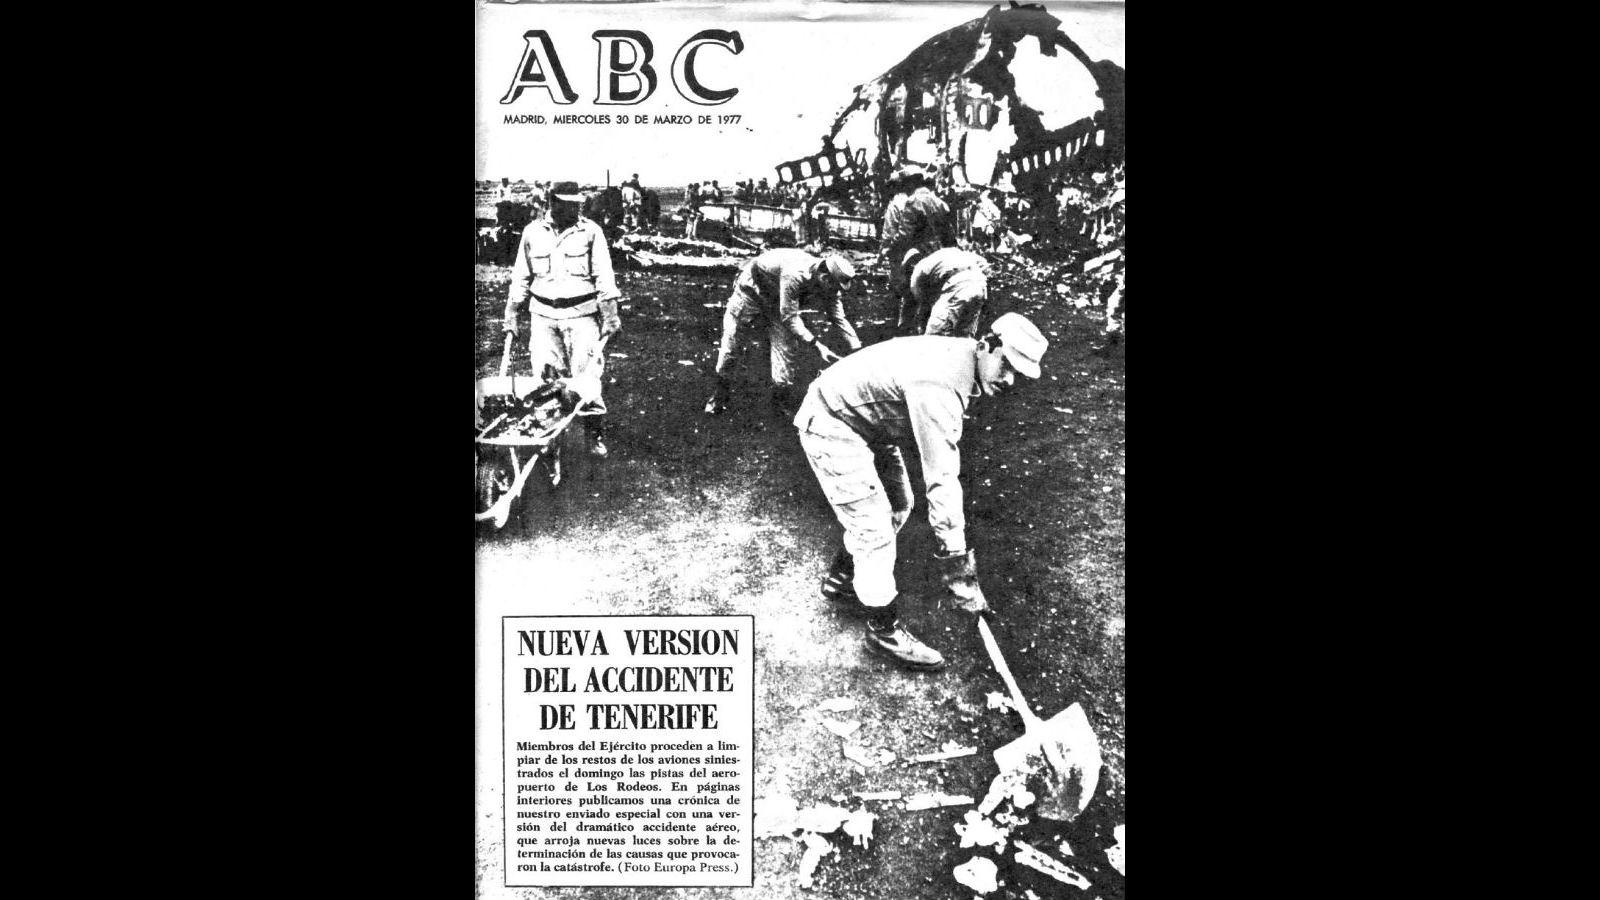 El 30 de marzo de 1977, tres días después del accidente, ABC seguía informando sobre las nuevas versiones del accidente